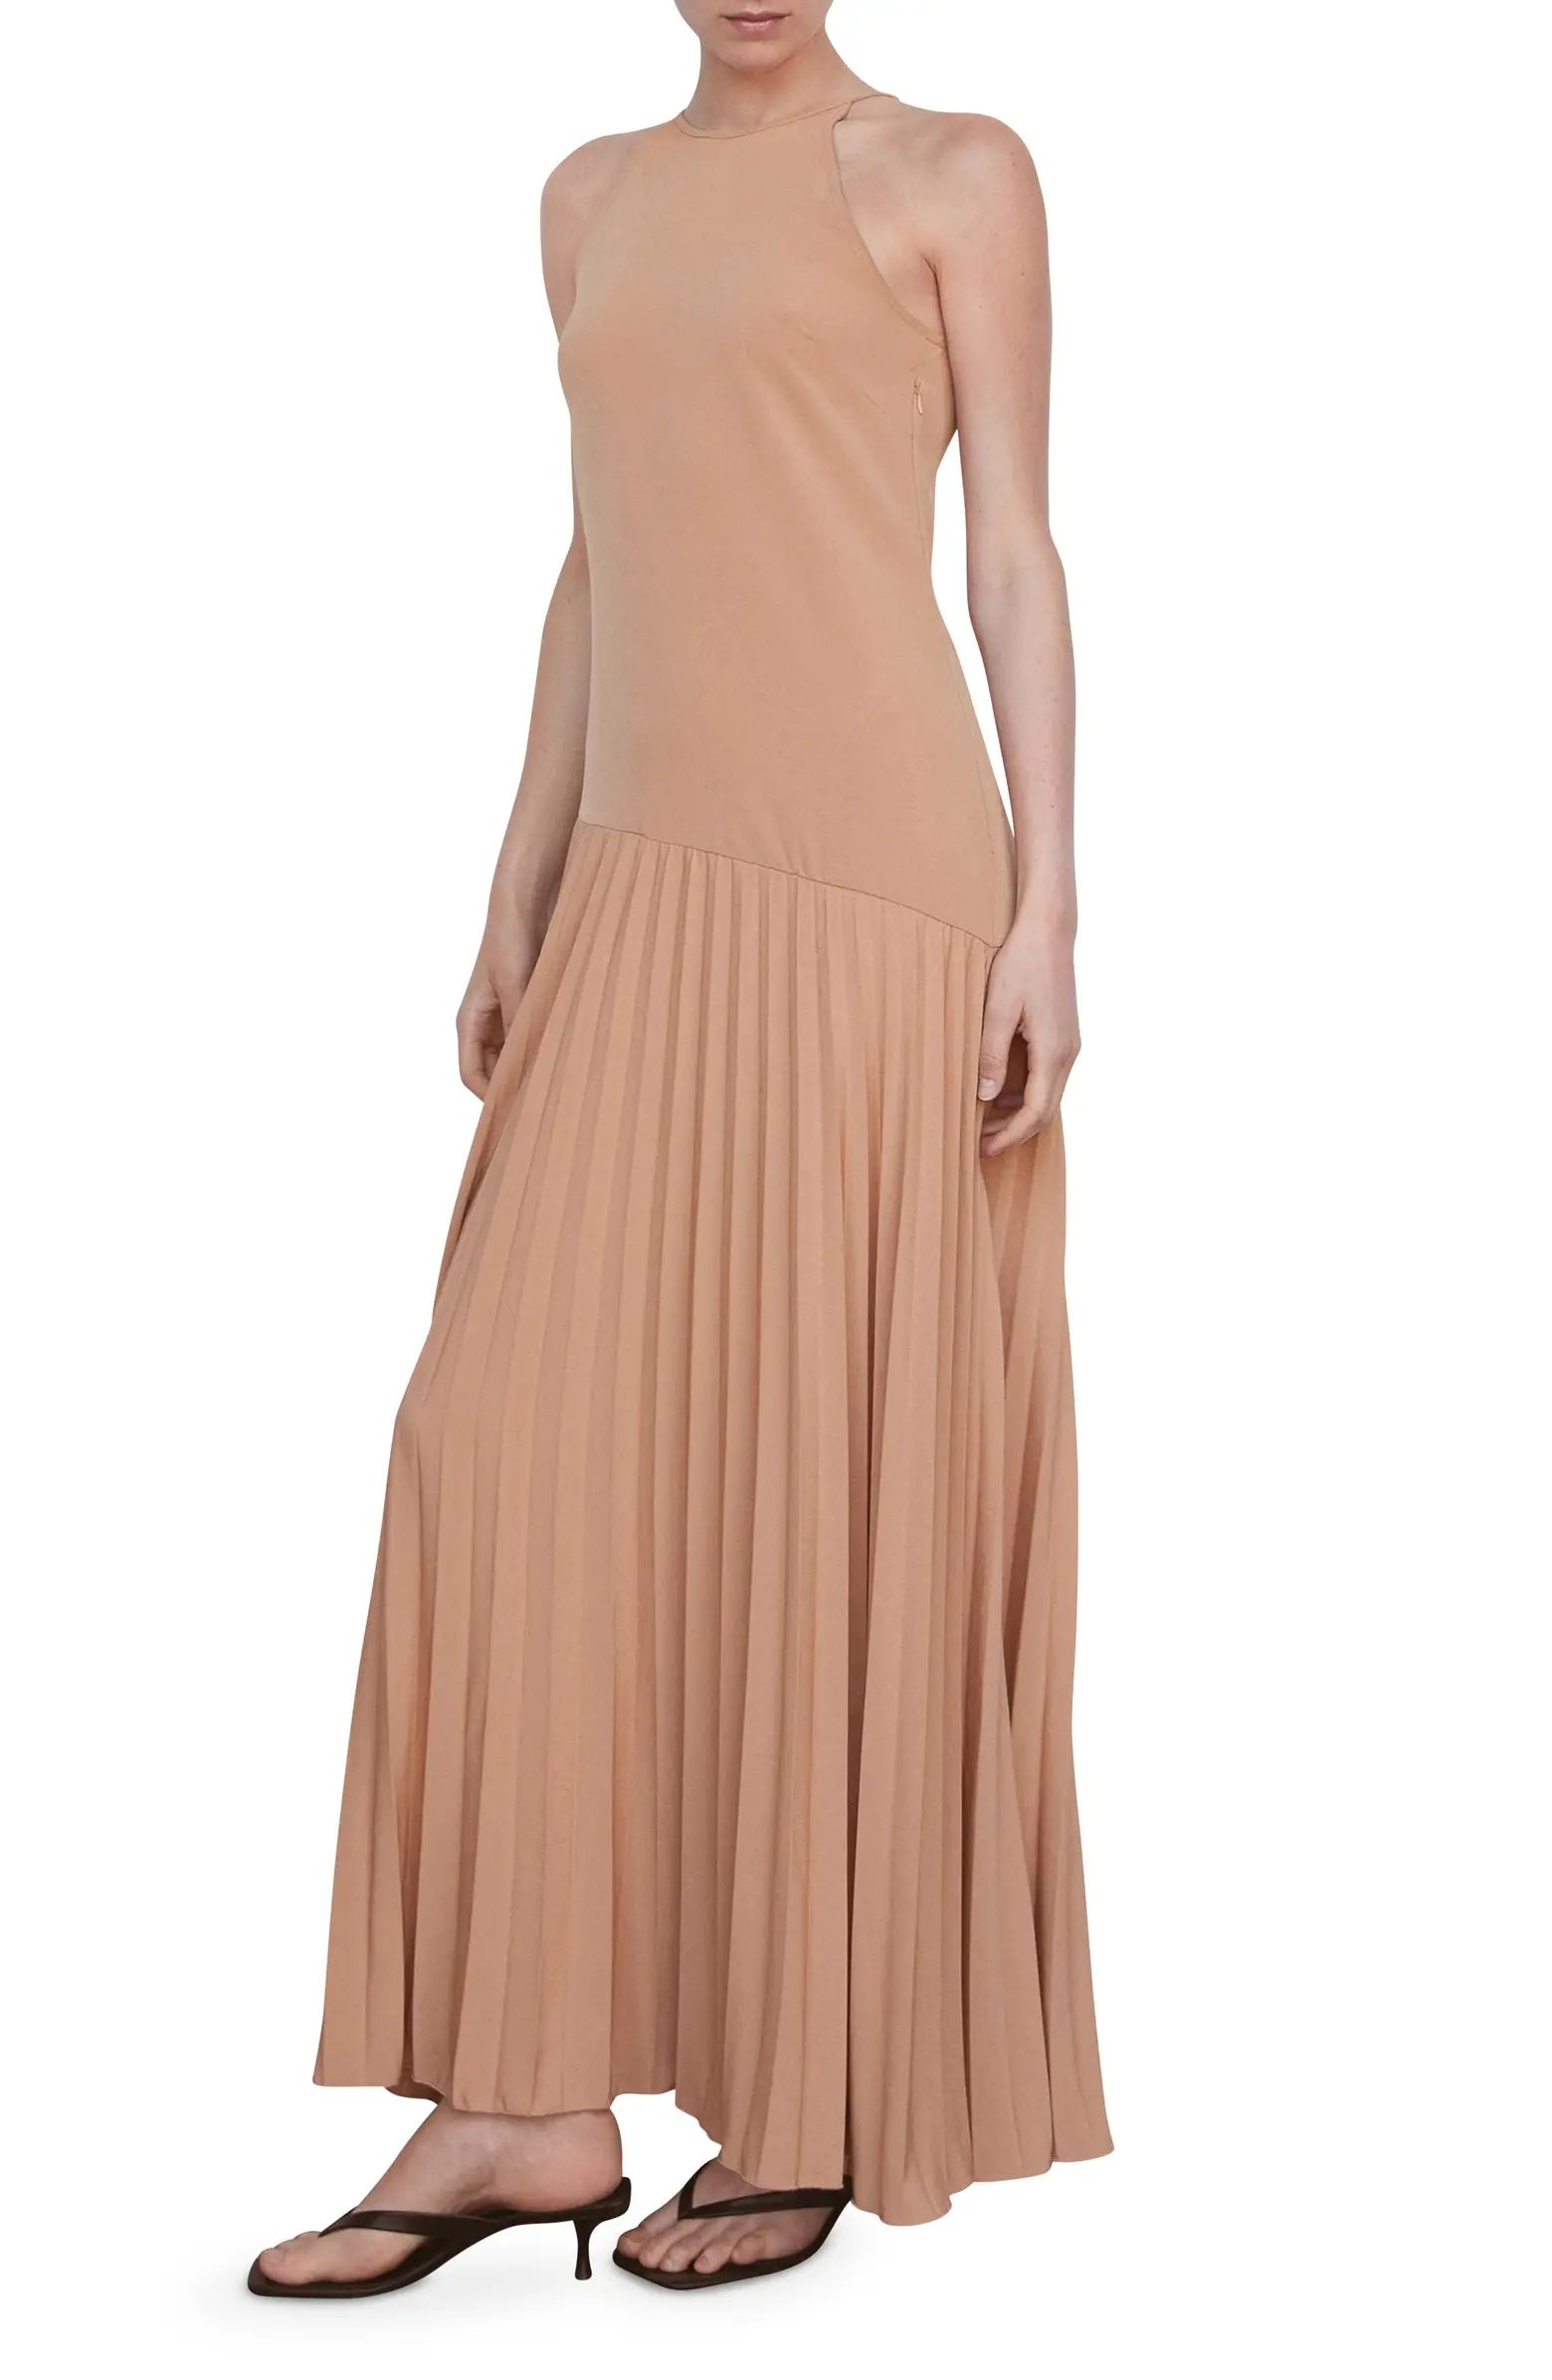 Pleat Skirt Sleeveless Dress | Nordstrom